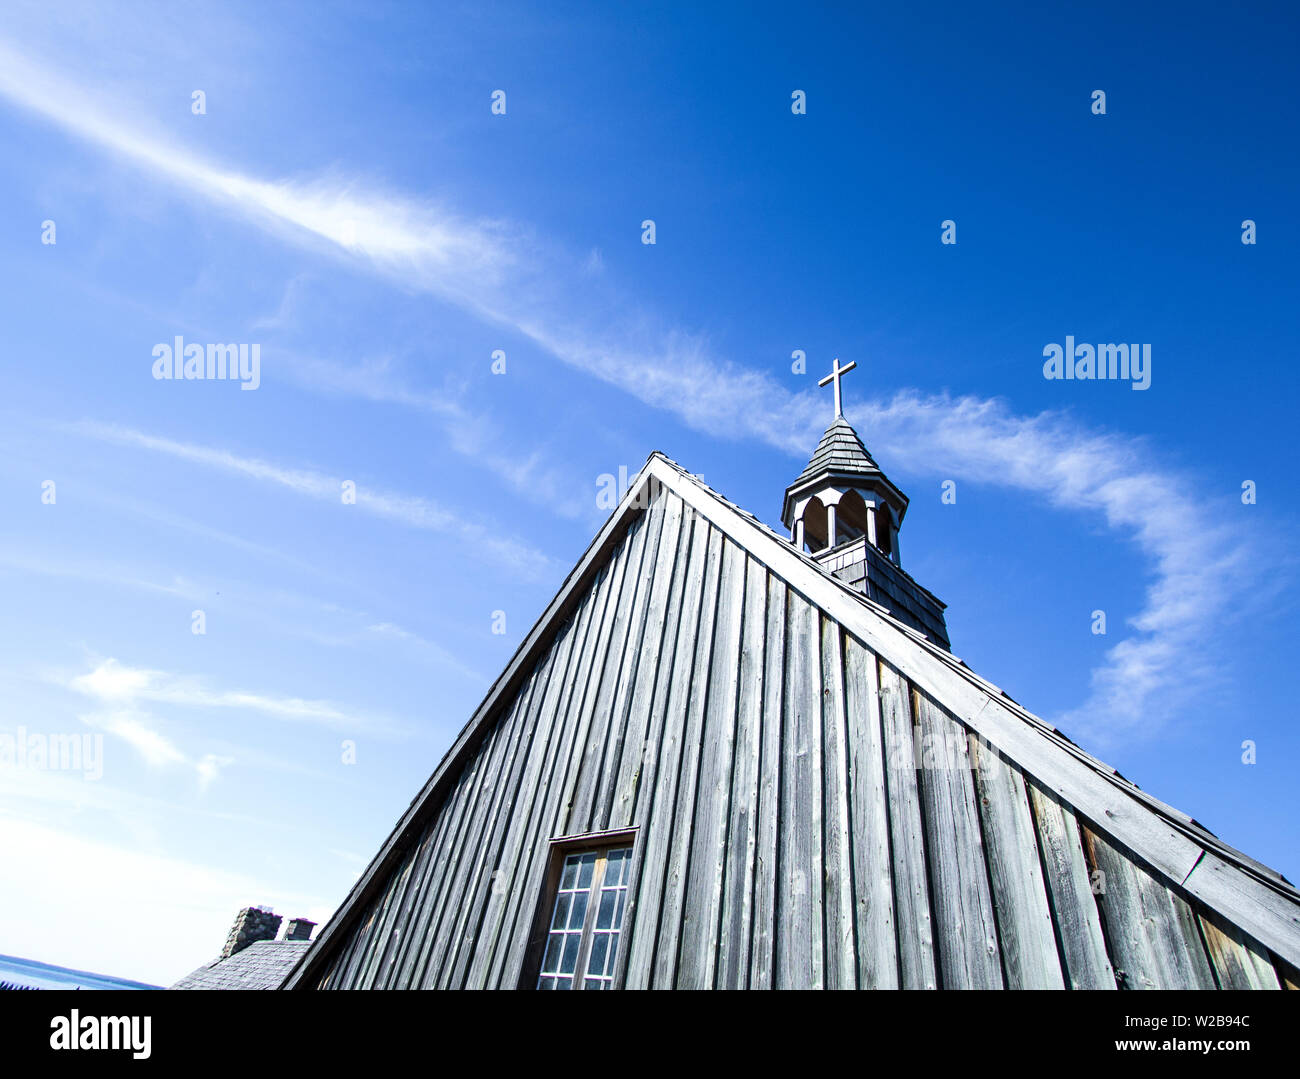 Kirchturm mit Platz kopieren. Land hölzerne Kirchturm gegen einen sonnigen blauen Himmel mit einem hölzernen Kreuz auf der Spitze. Stockfoto